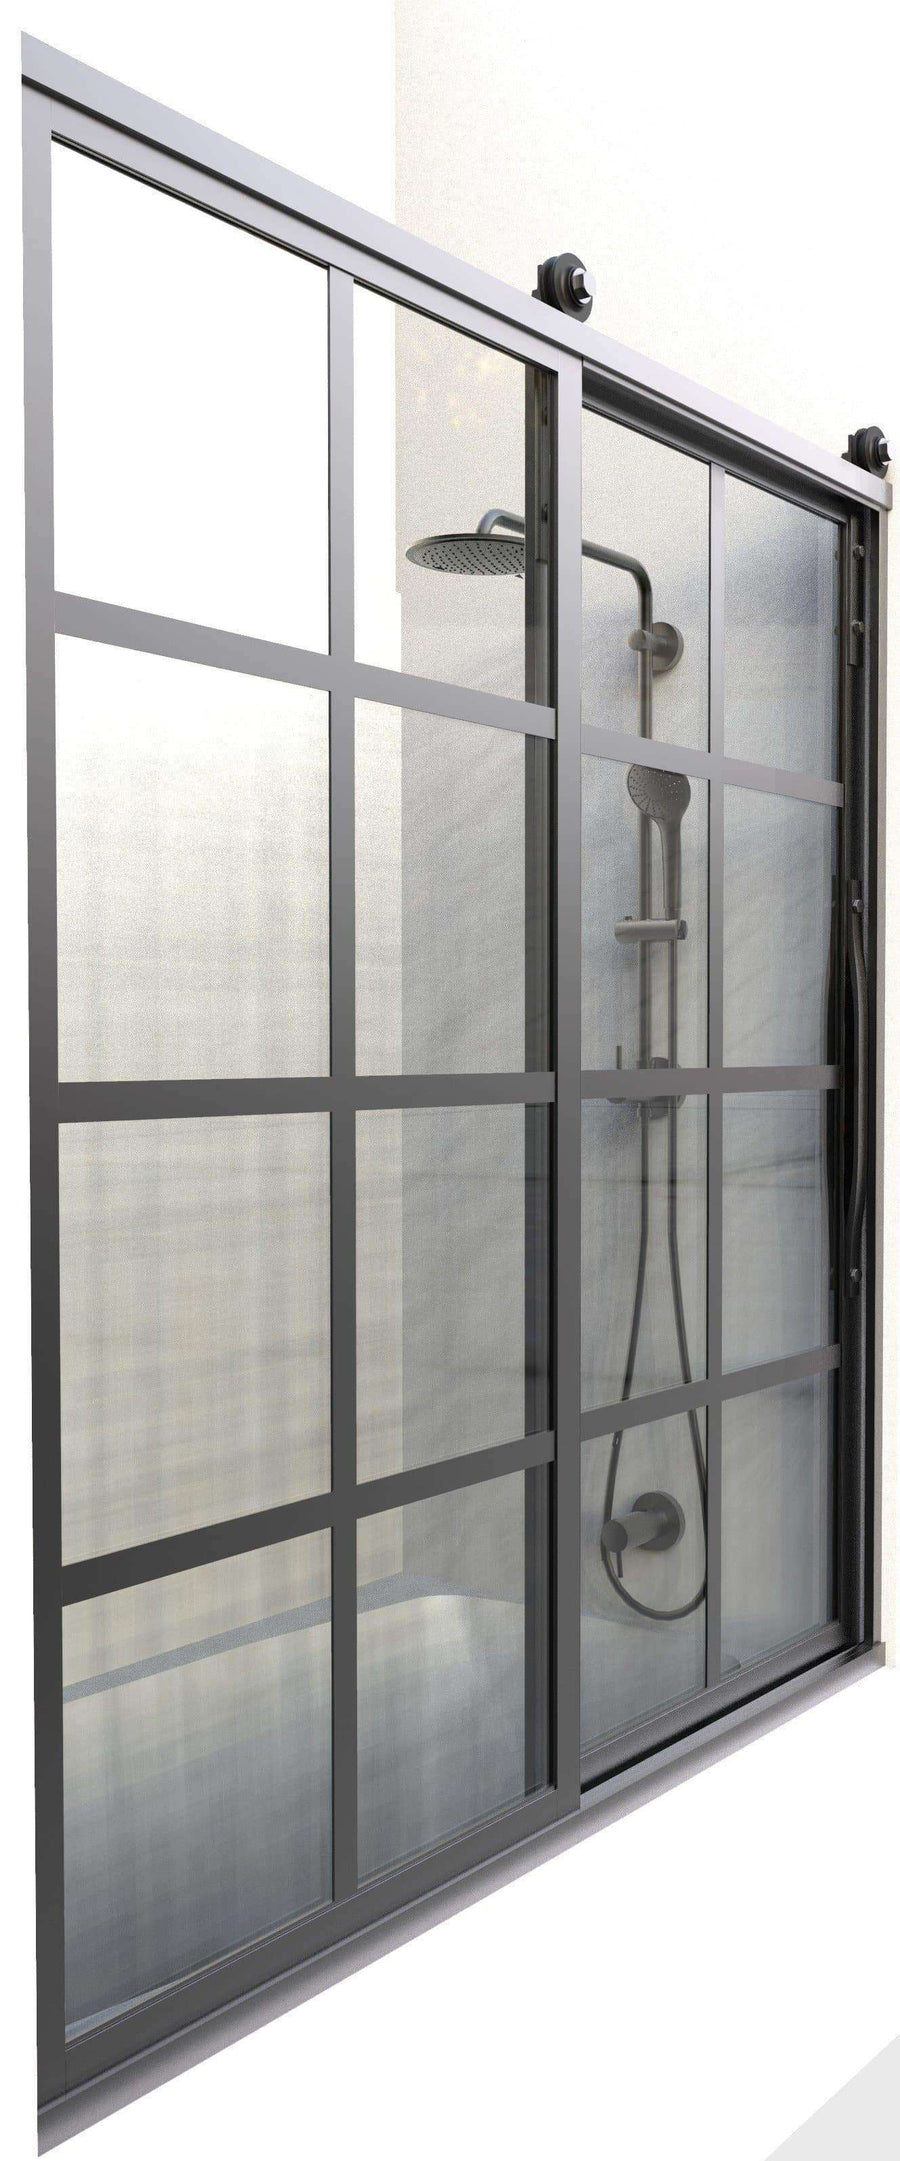 Gridscape Eclipse Barn Door Style Factory Window Shower Door with Black Metal Grid Pattern